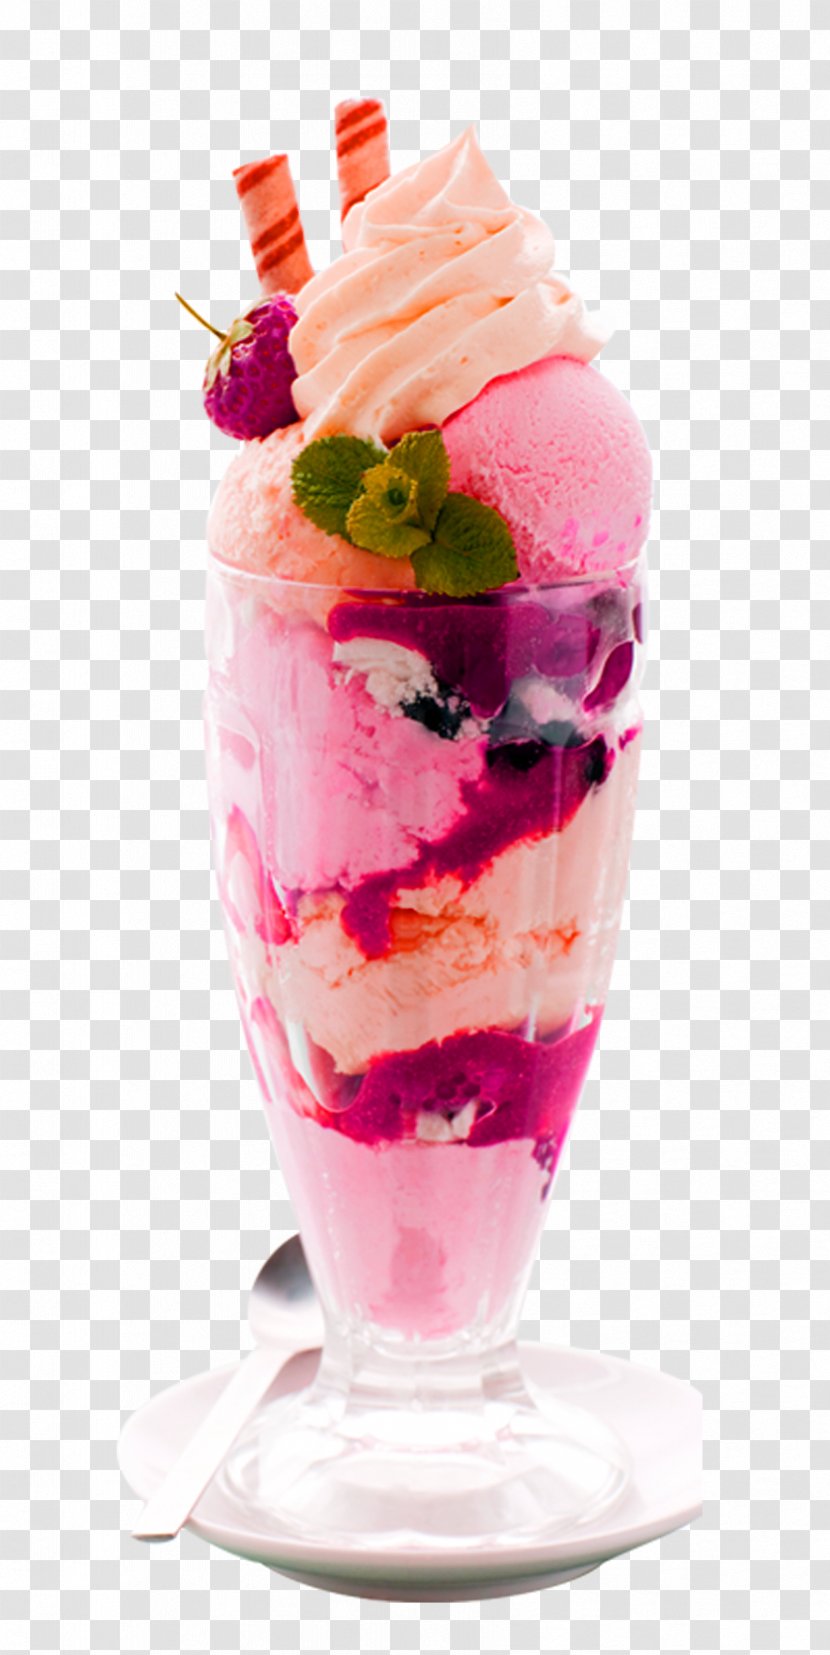 Ice Cream Sundae Smoothie Milkshake - Falooda - Strawberry Decorative Patterns Transparent PNG